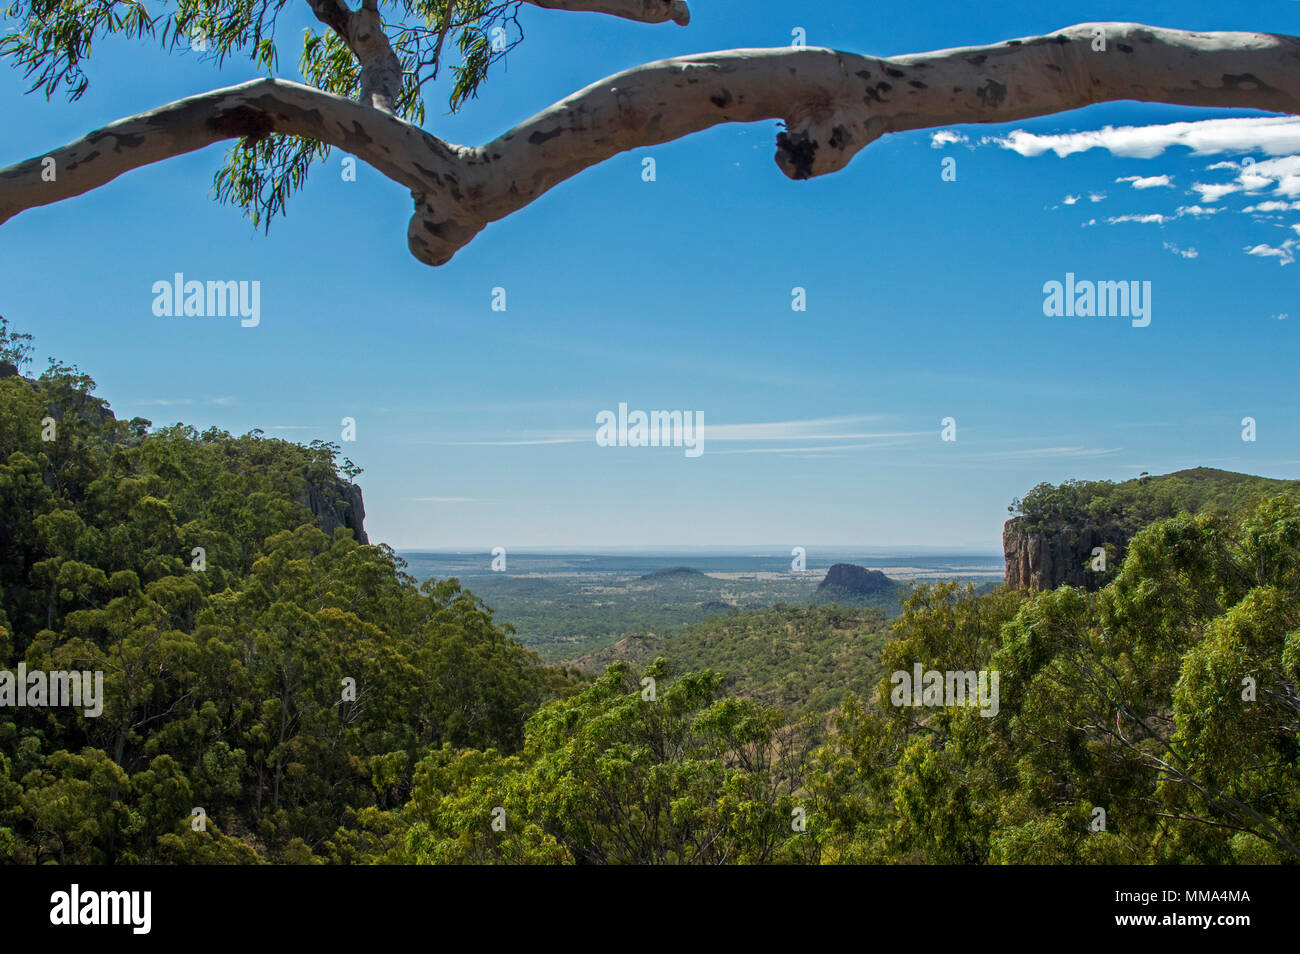 Voir de vastes plaines, collines boisées et gorge sous ciel bleu de Lookout à Fred's gorge dans Minerva Hills National Park, près de Springsure Qld. L'Australie Banque D'Images